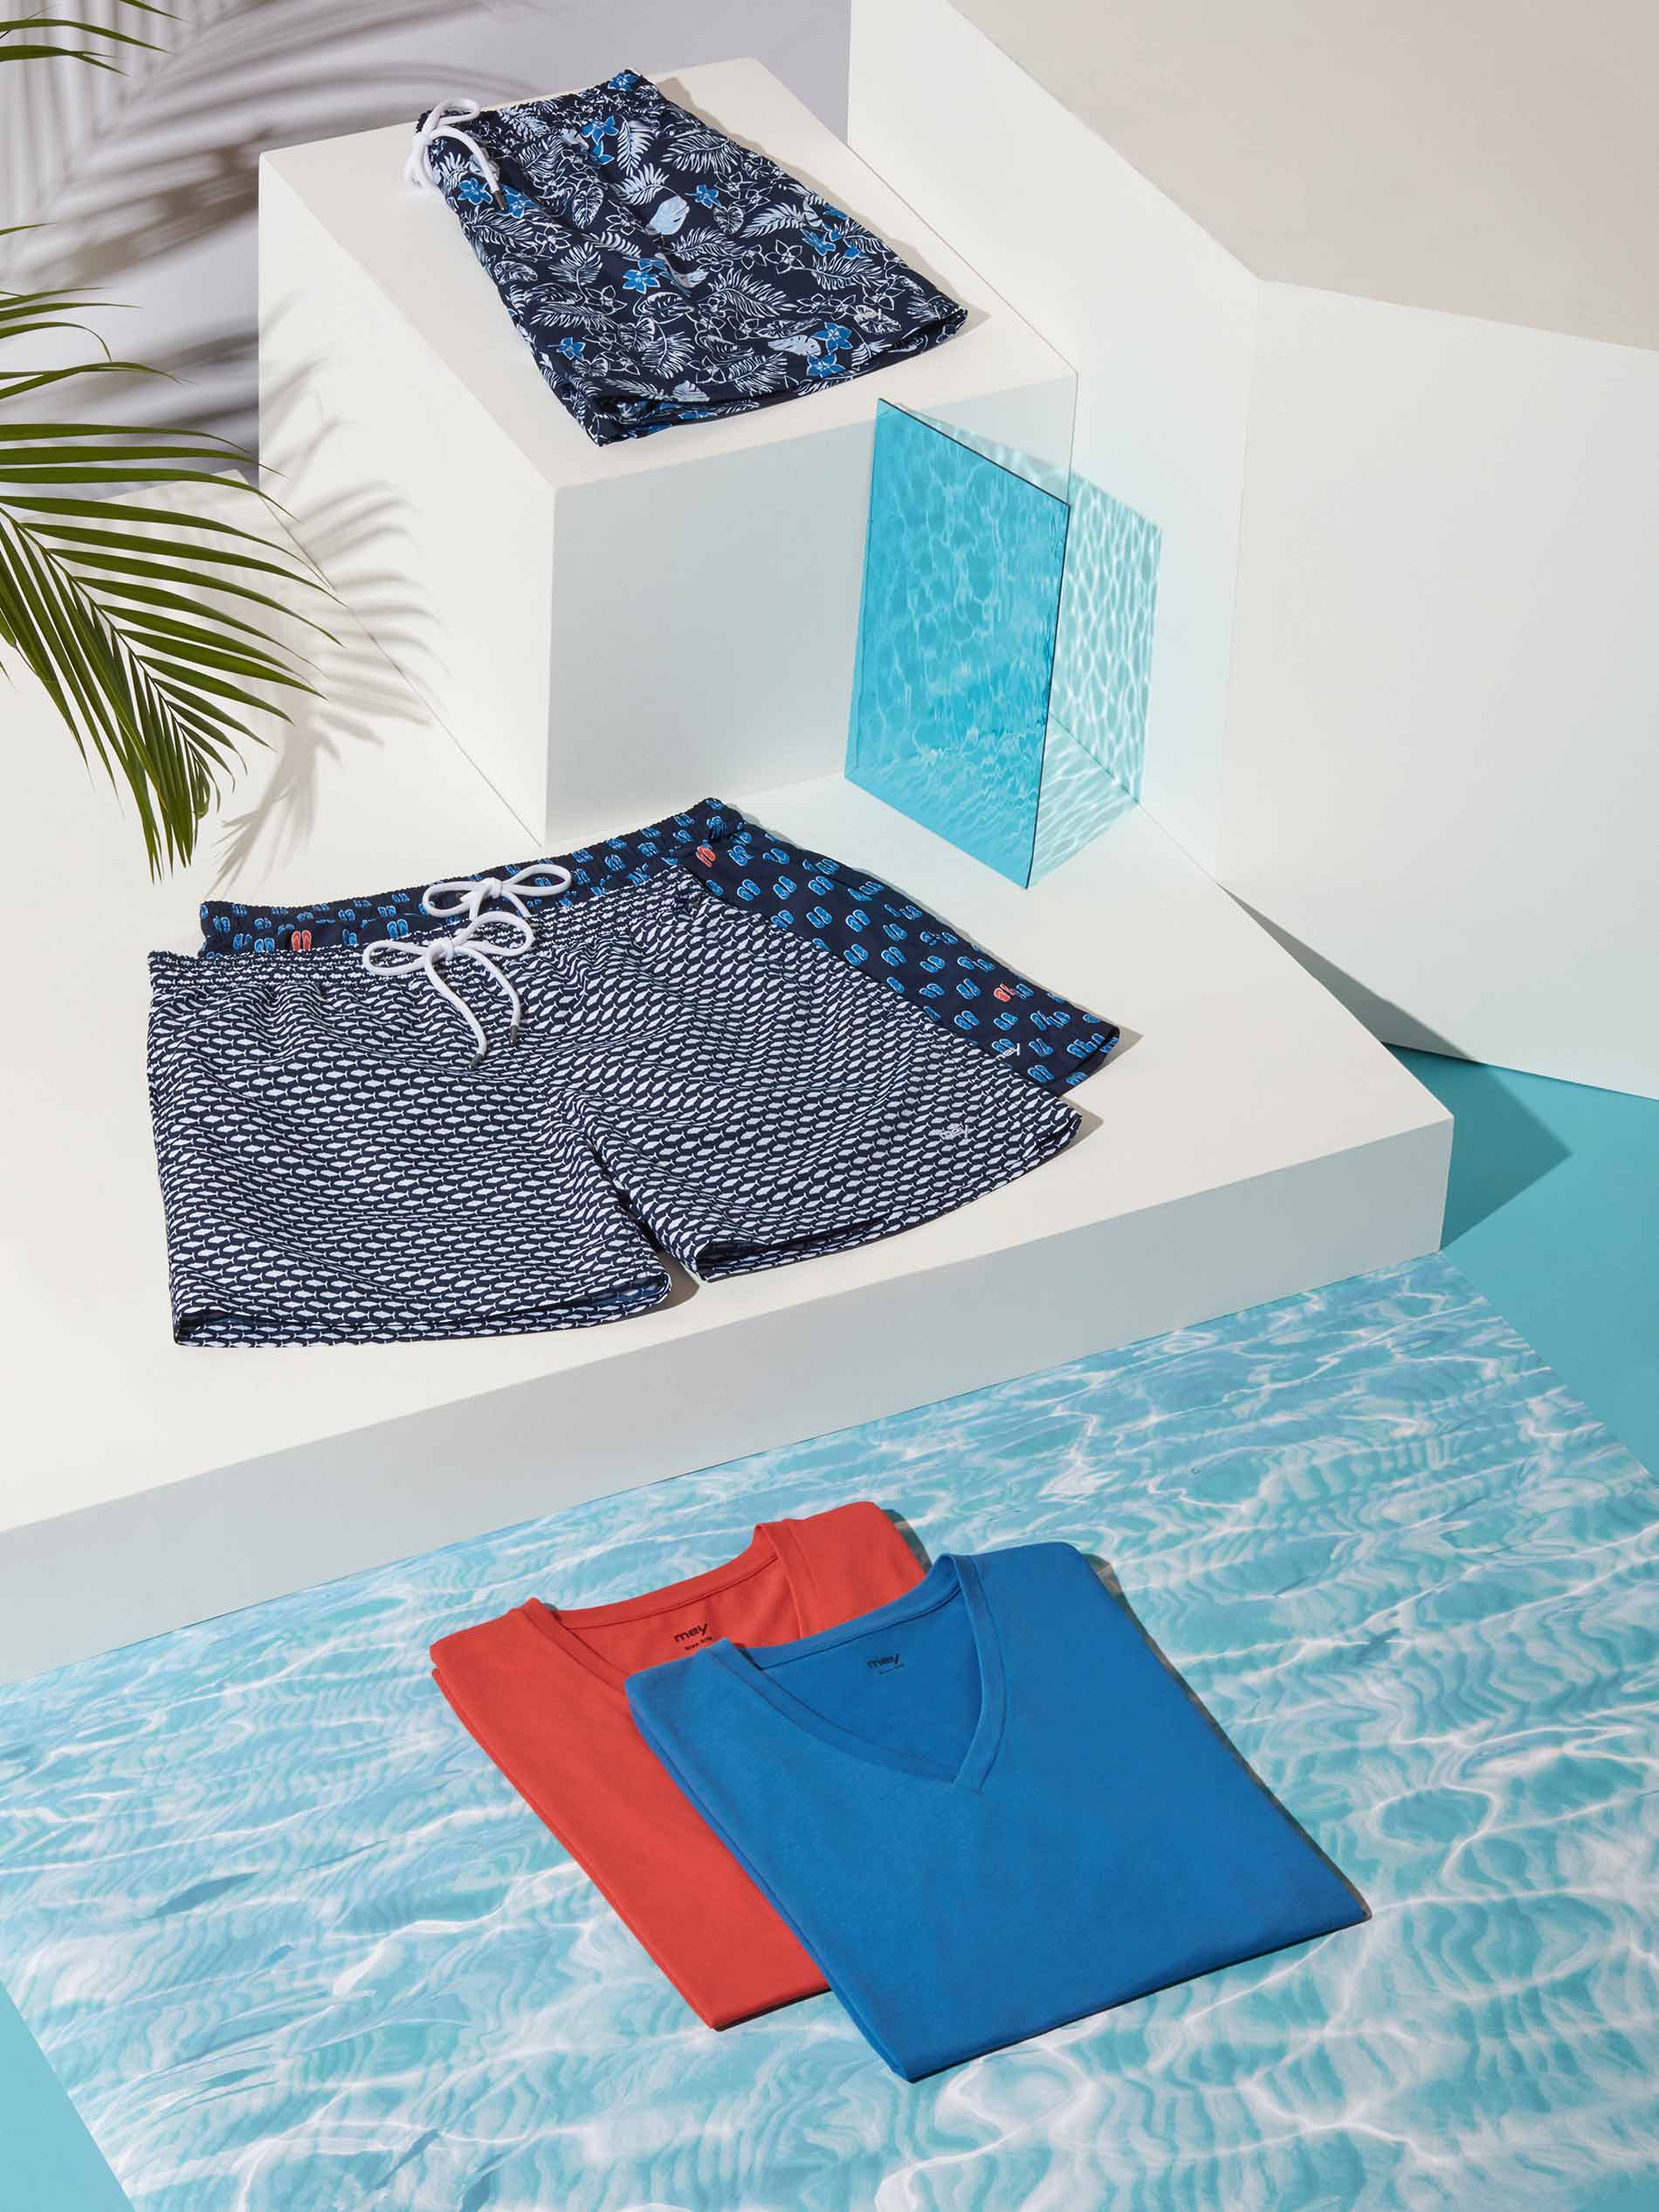 swimwear: zwembroeken en kleurrijke T-shirts op witte plateaus met water en palmblad op de achtergrond | mey®